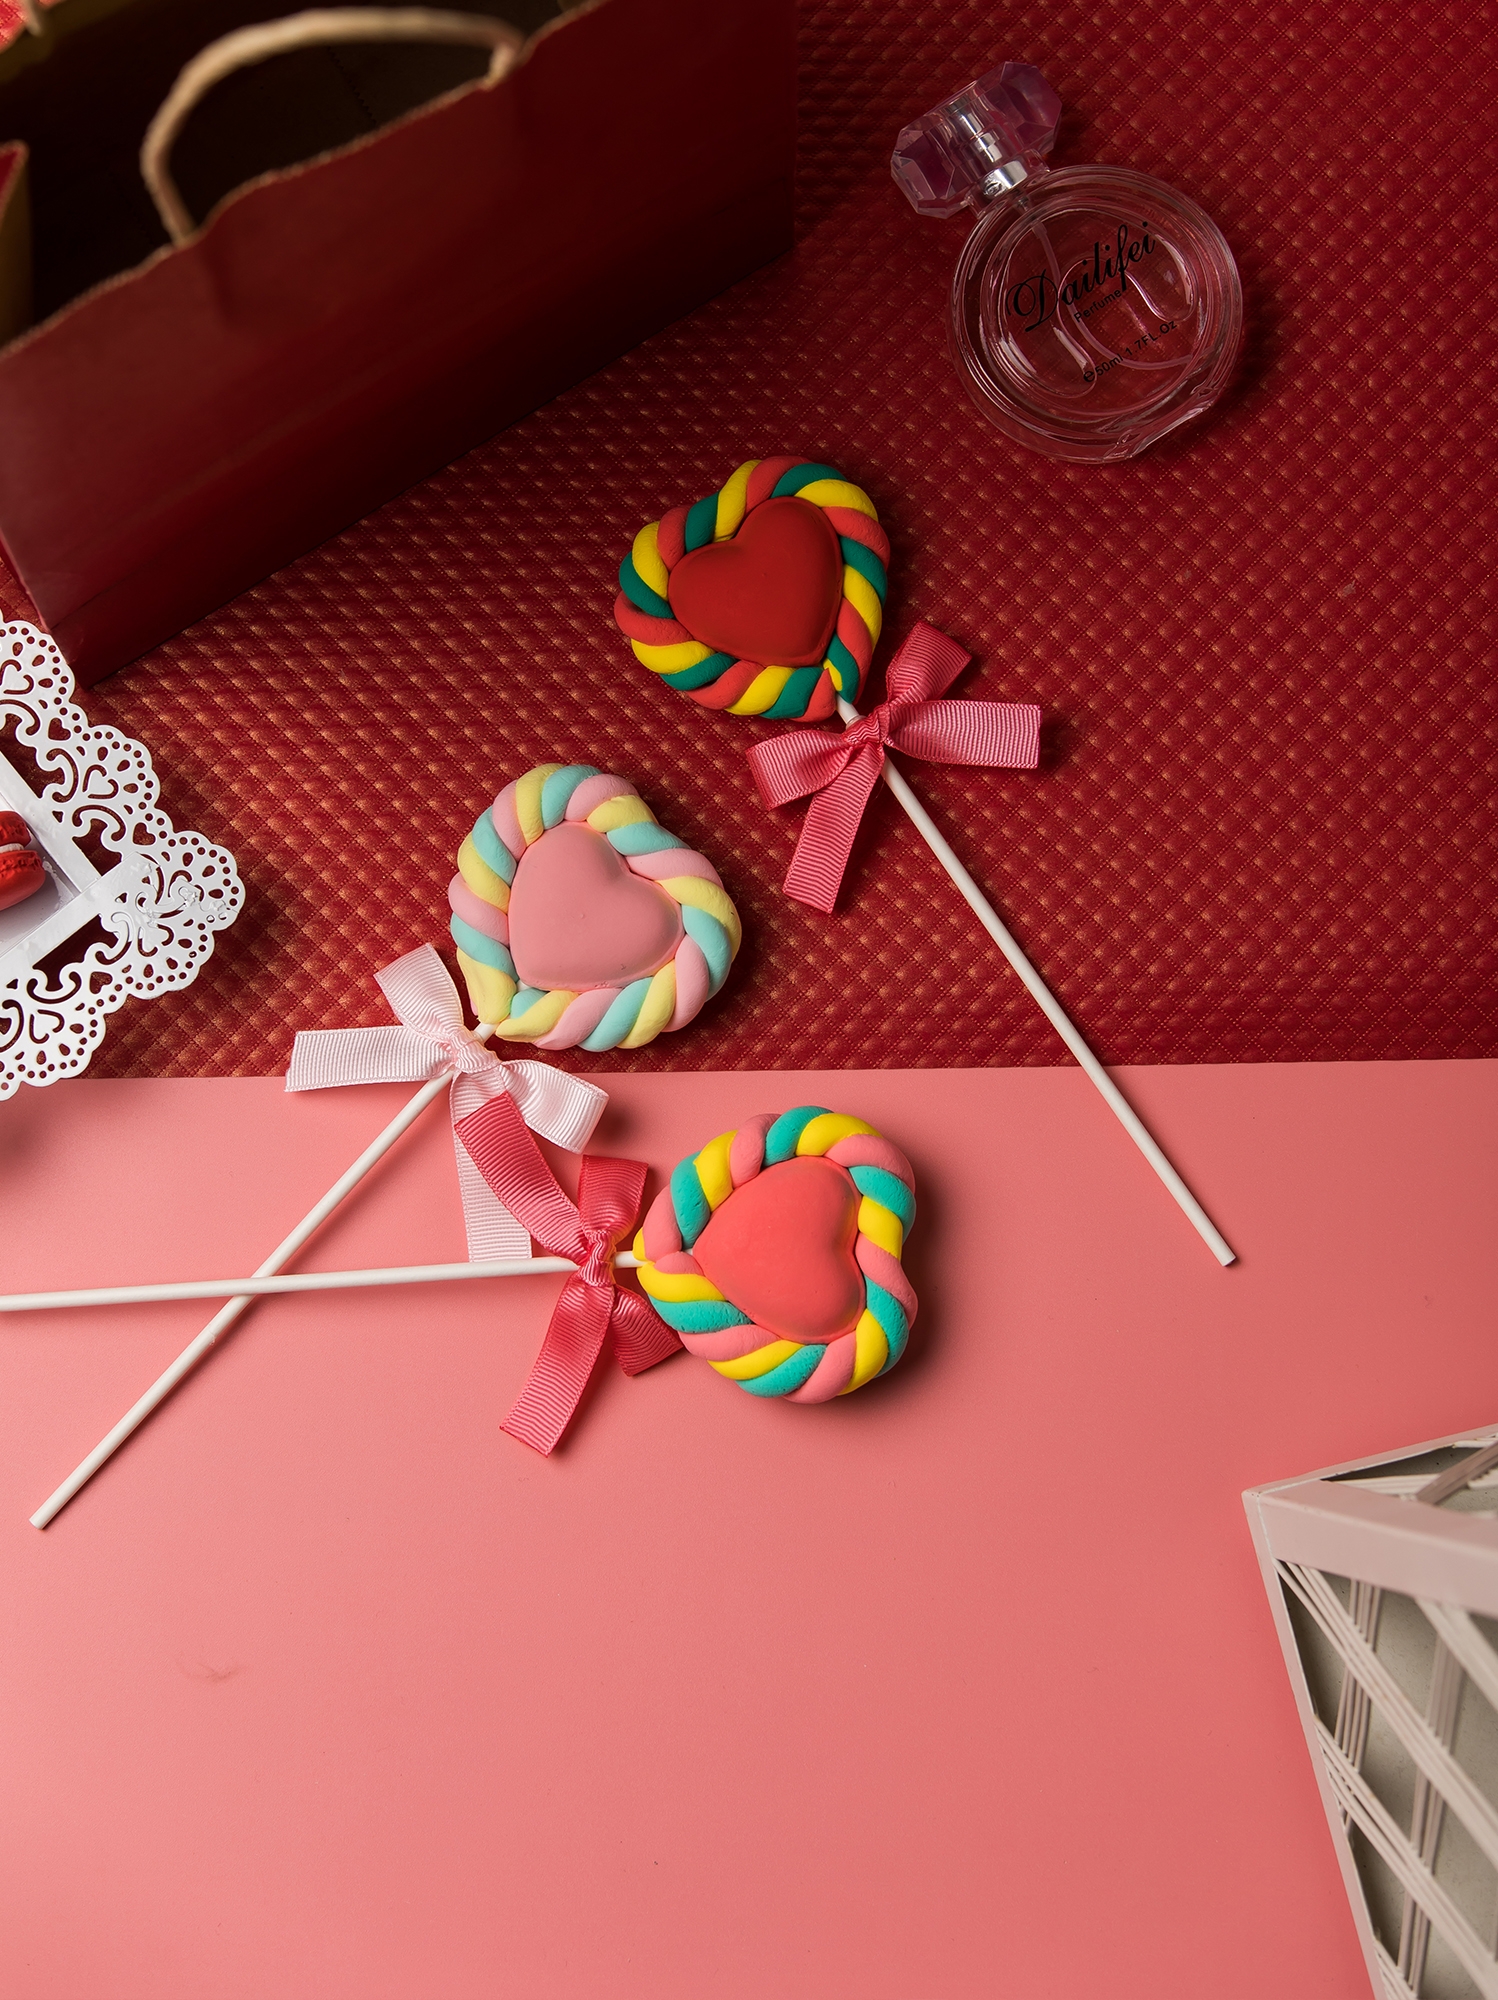 愛心棉花棒棒糖假糖果甜品裝飾擺設拍攝道具 (8.3折)